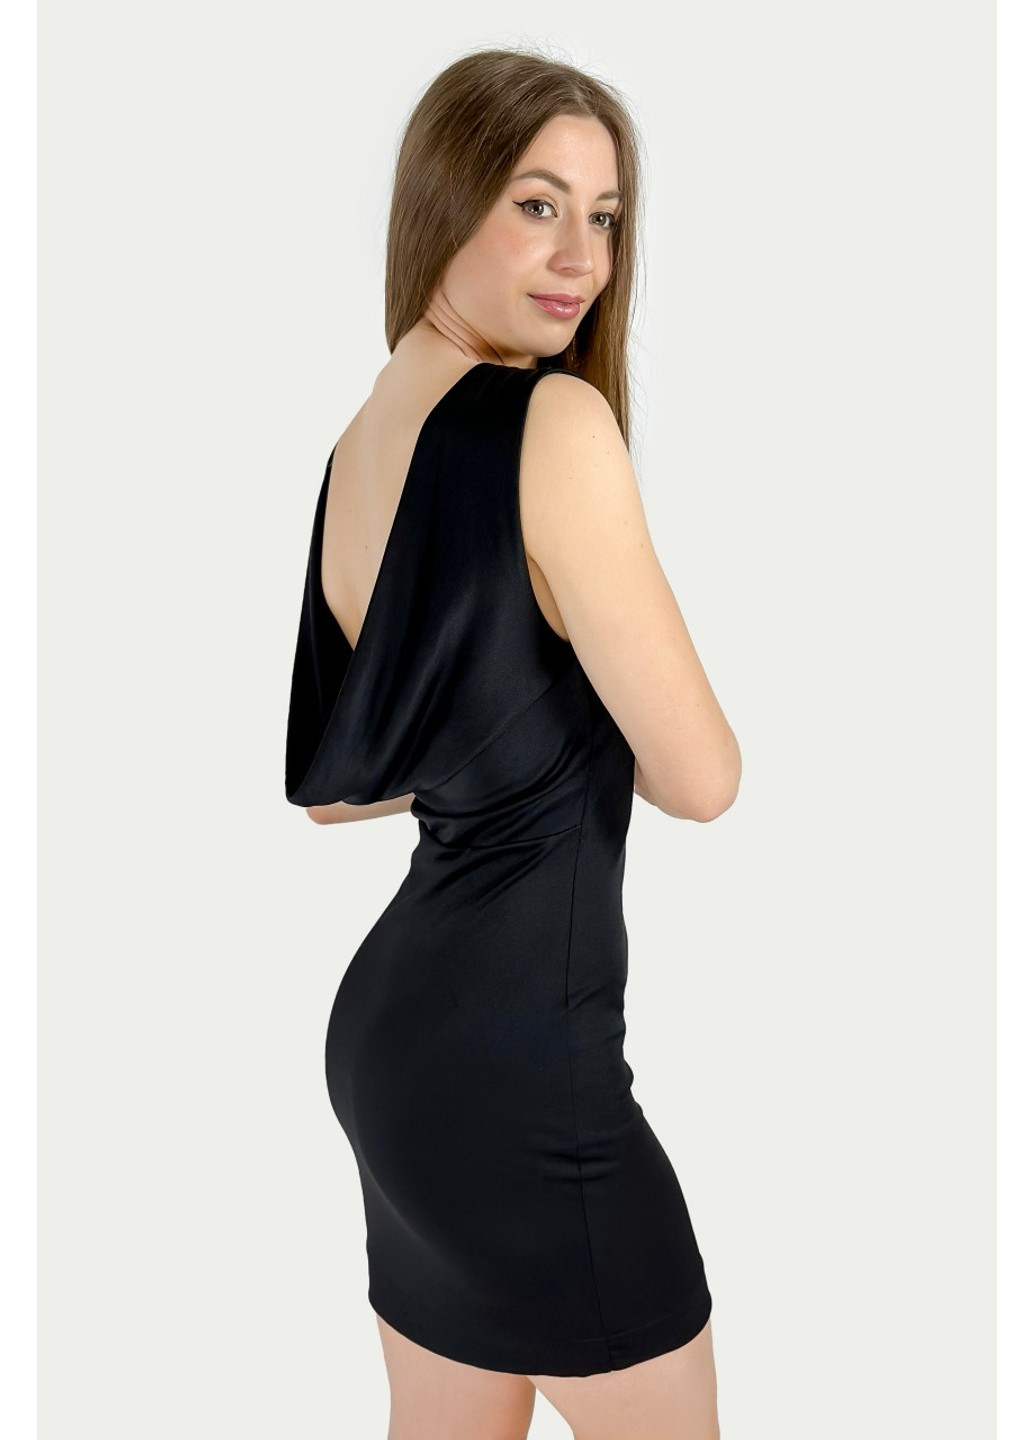 Черное коктейльное платье 0909/237/800 бандо Zara однотонное